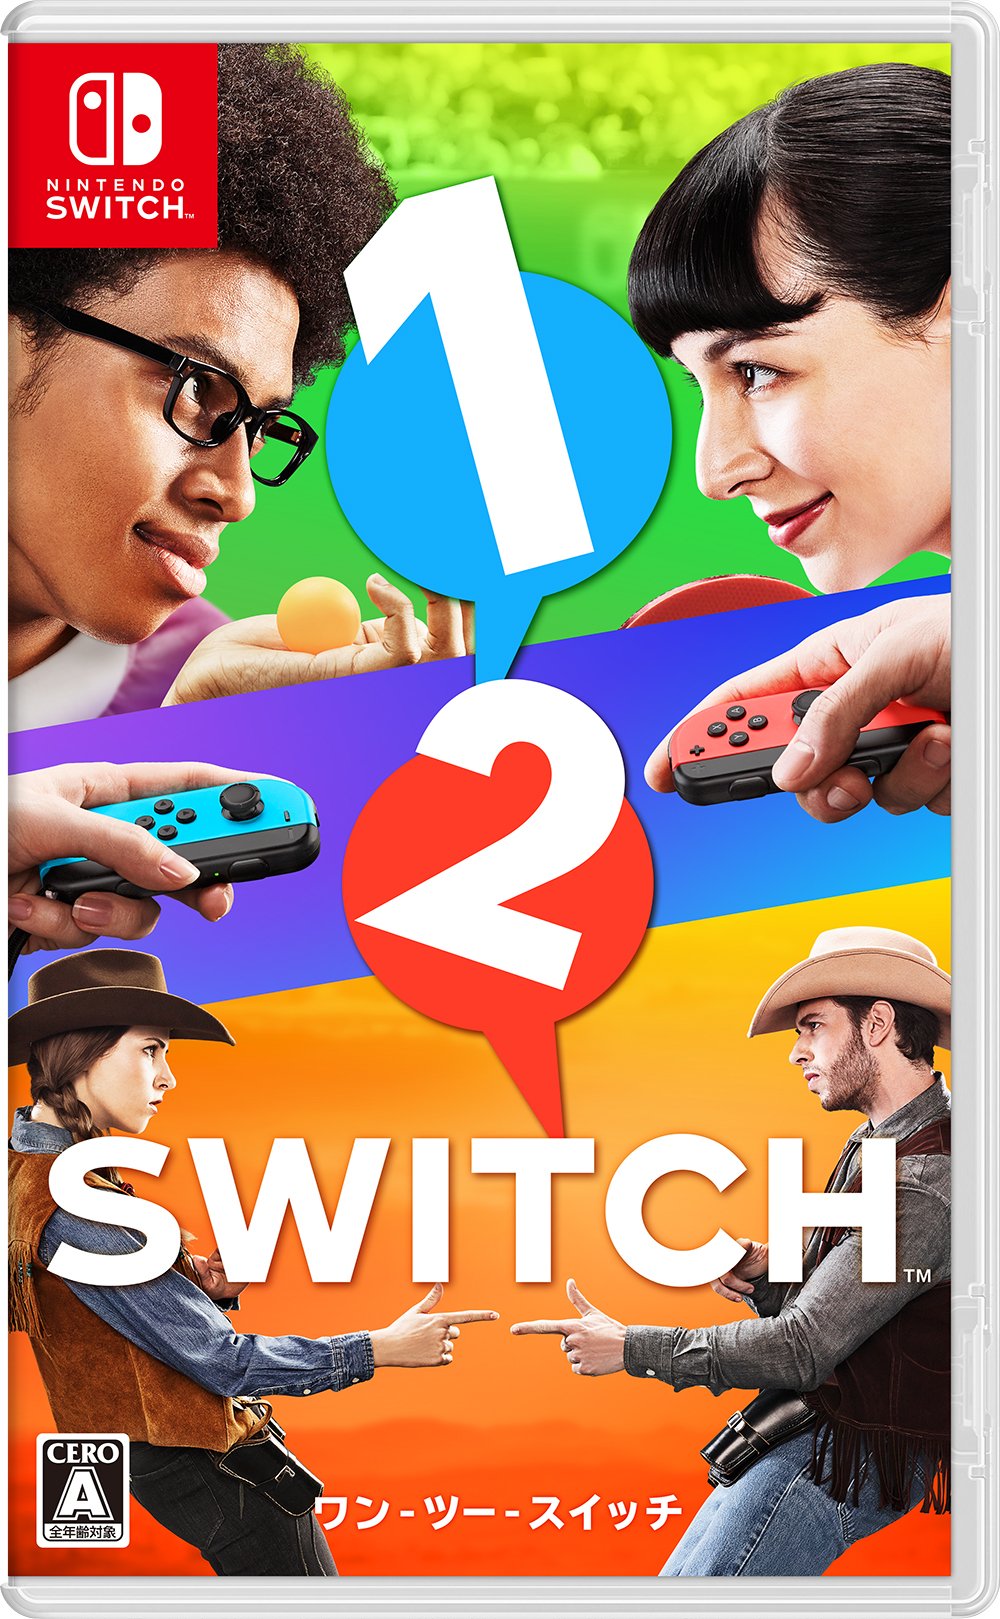 Nintendo Switch JP - 1-2-Swtich.jpg